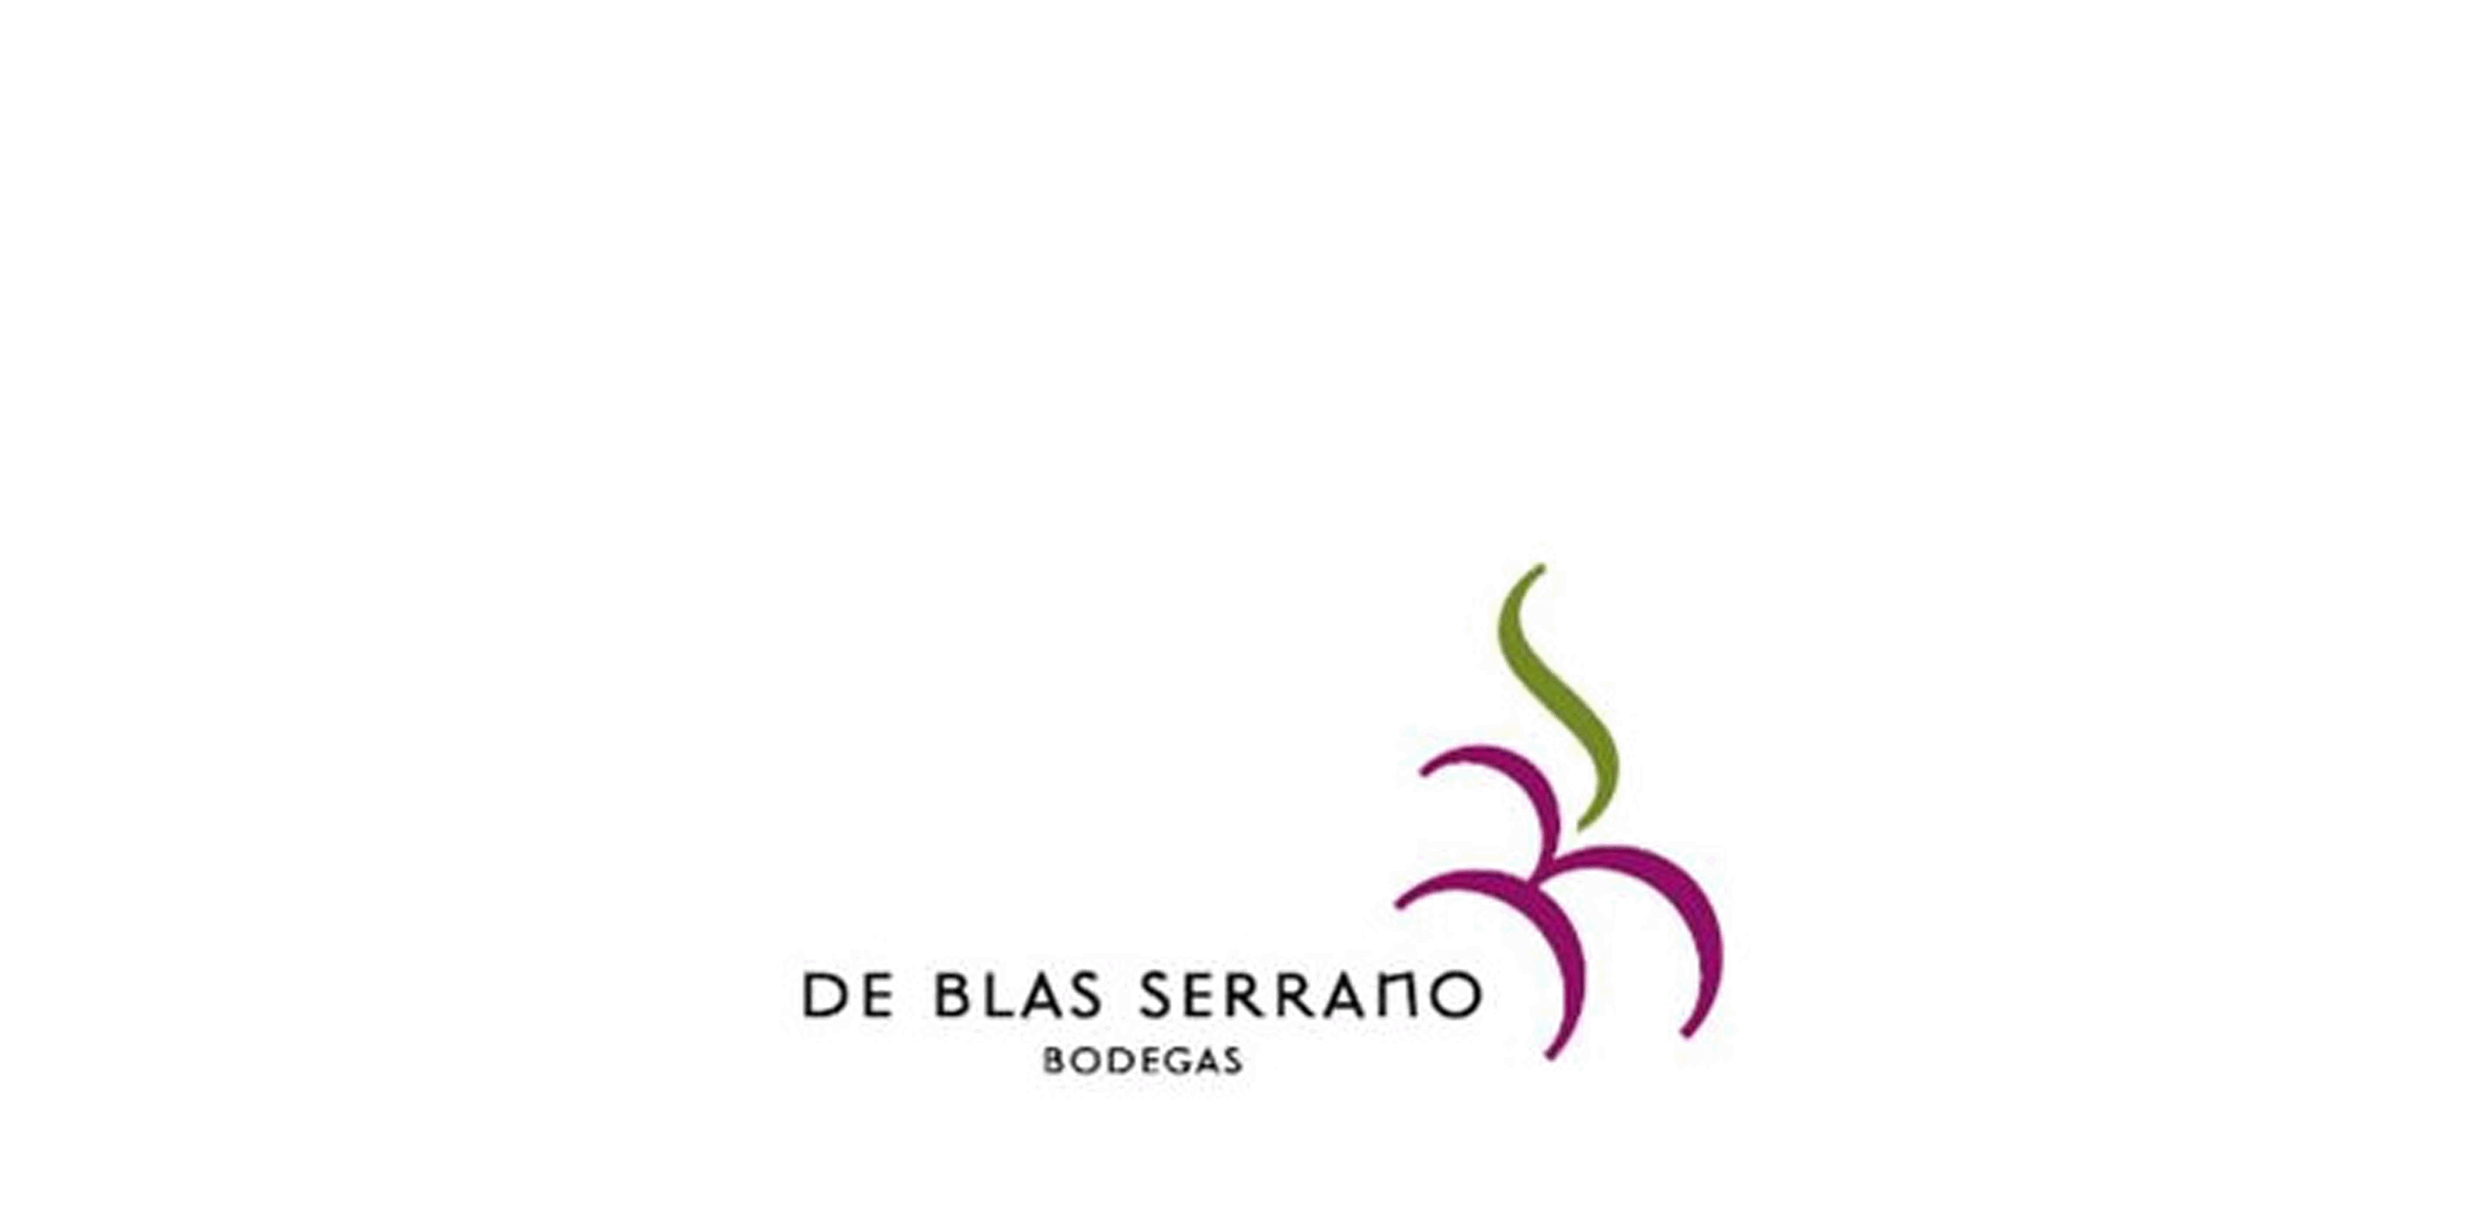 Bodegas De Blas Serrano